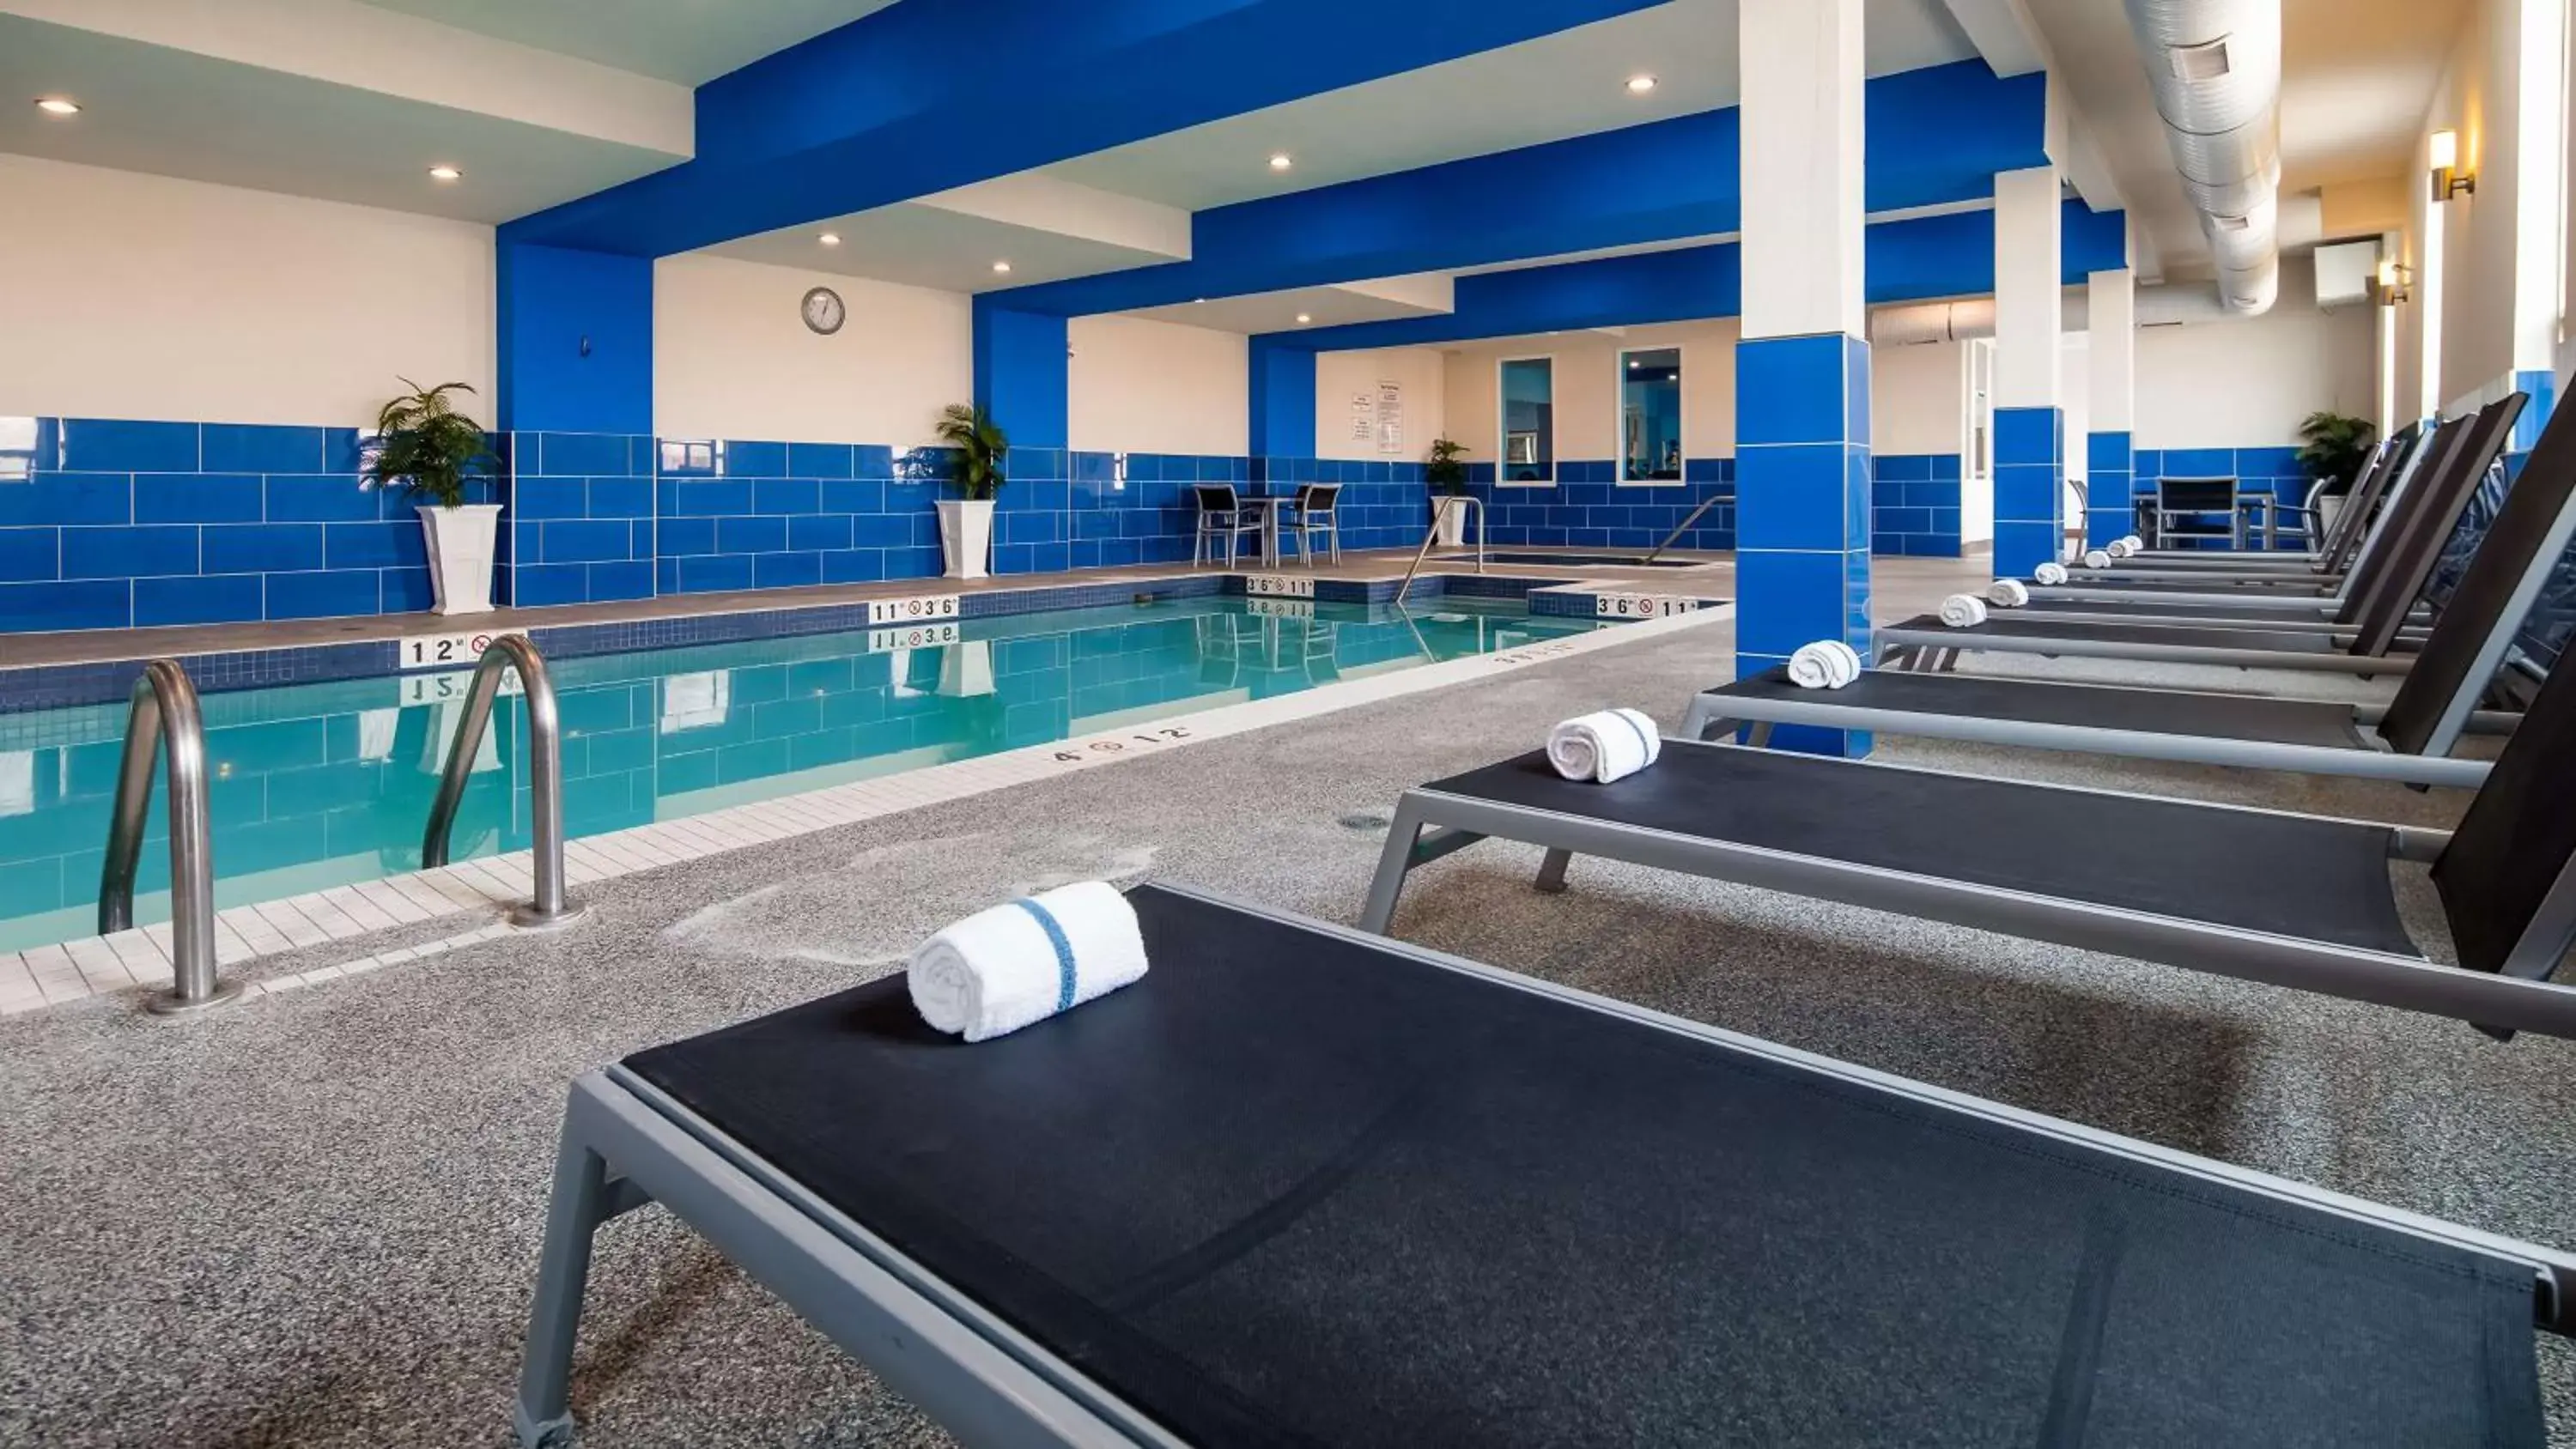 On site, Swimming Pool in Best Western Plus Kindersley Hotel